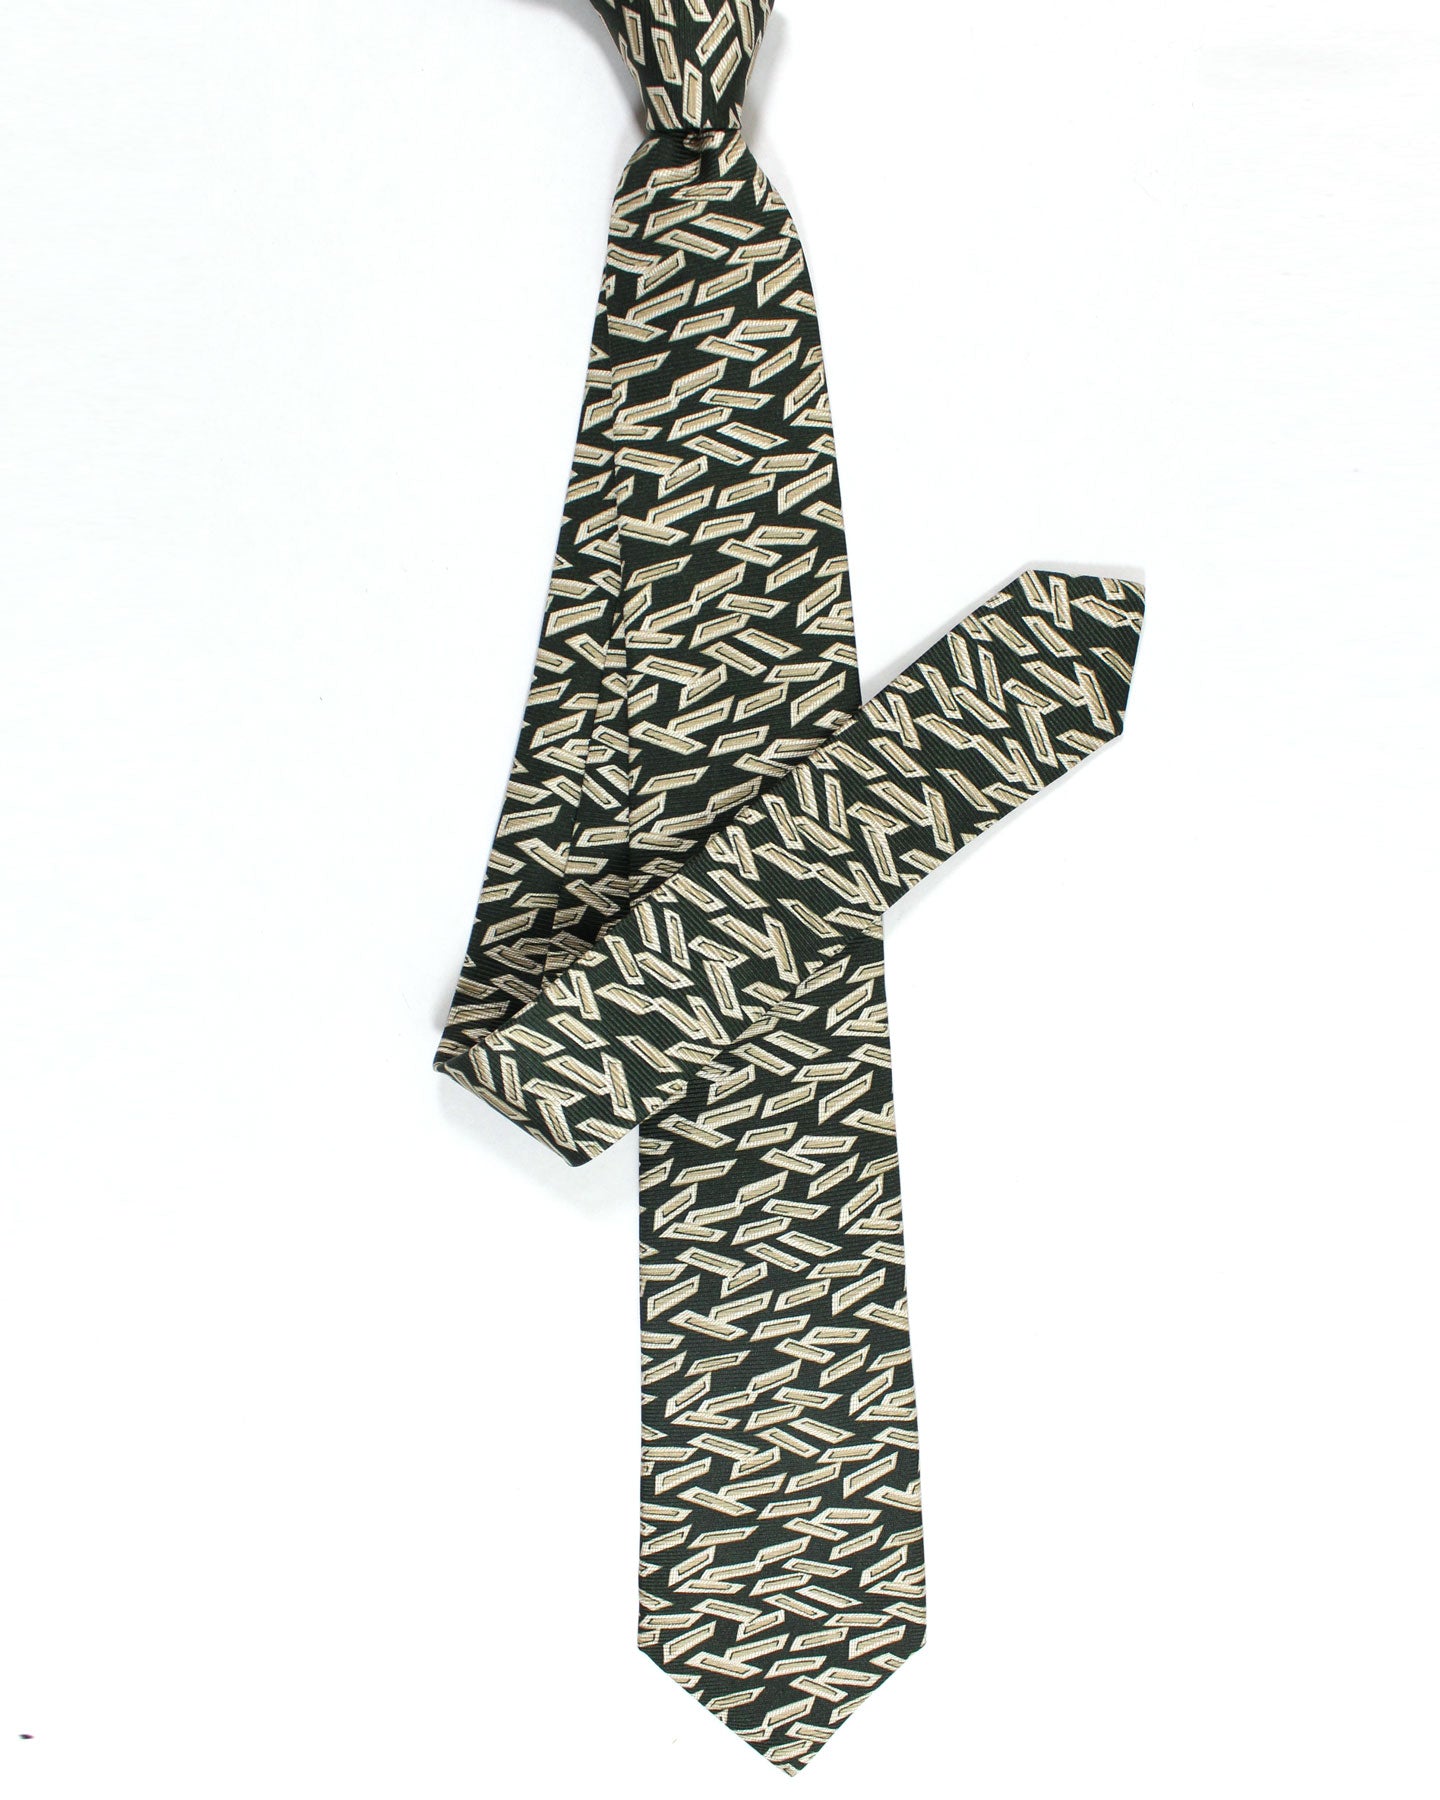 Kiton Silk Tie Dark Green Taupe Geometric Design - Sevenfold Necktie